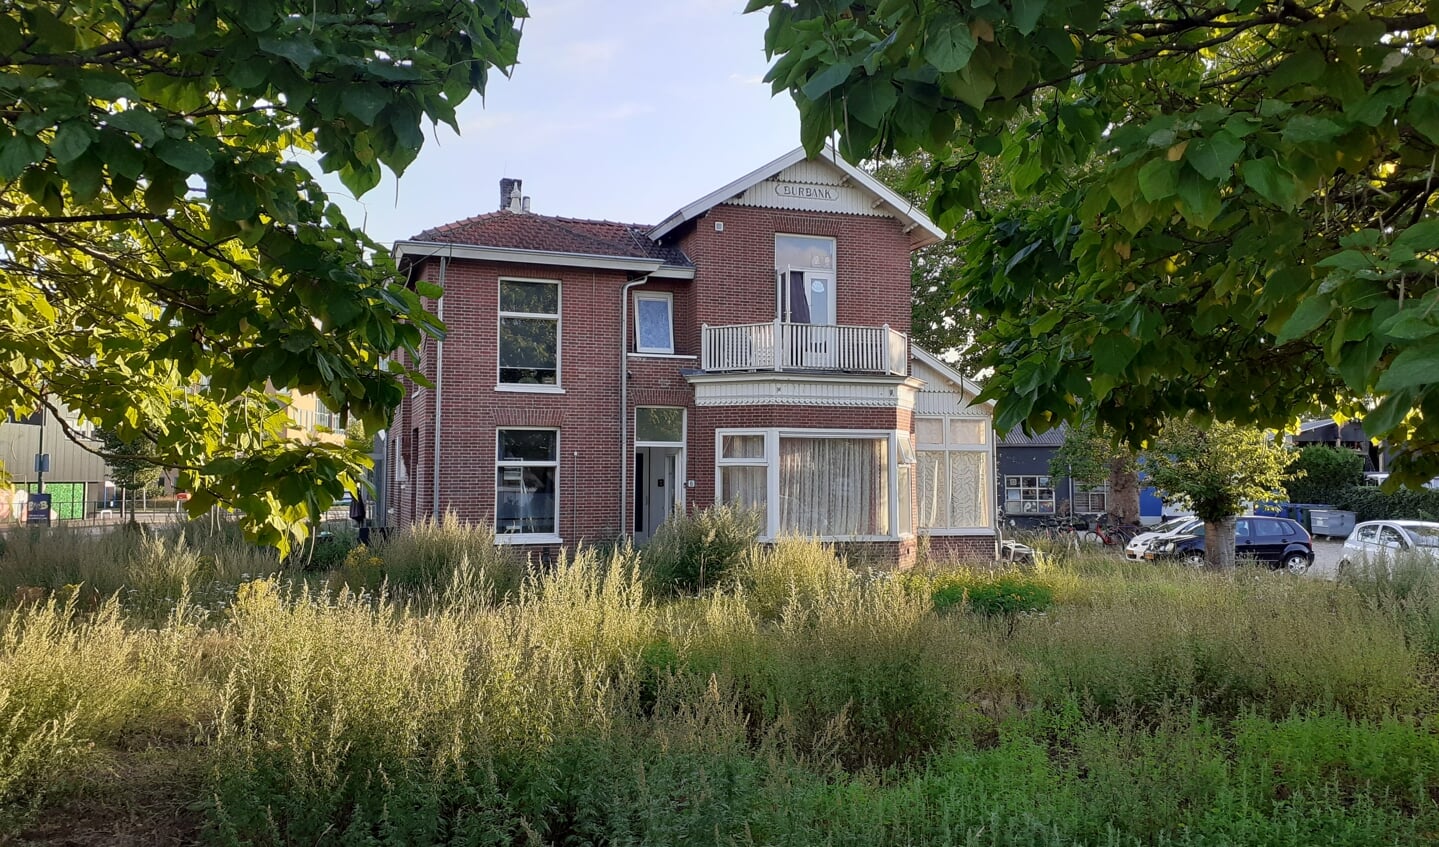 Villa Burbank vanaf de Schoudermantel gezien, met de twee catalpa's op de voorgrond.